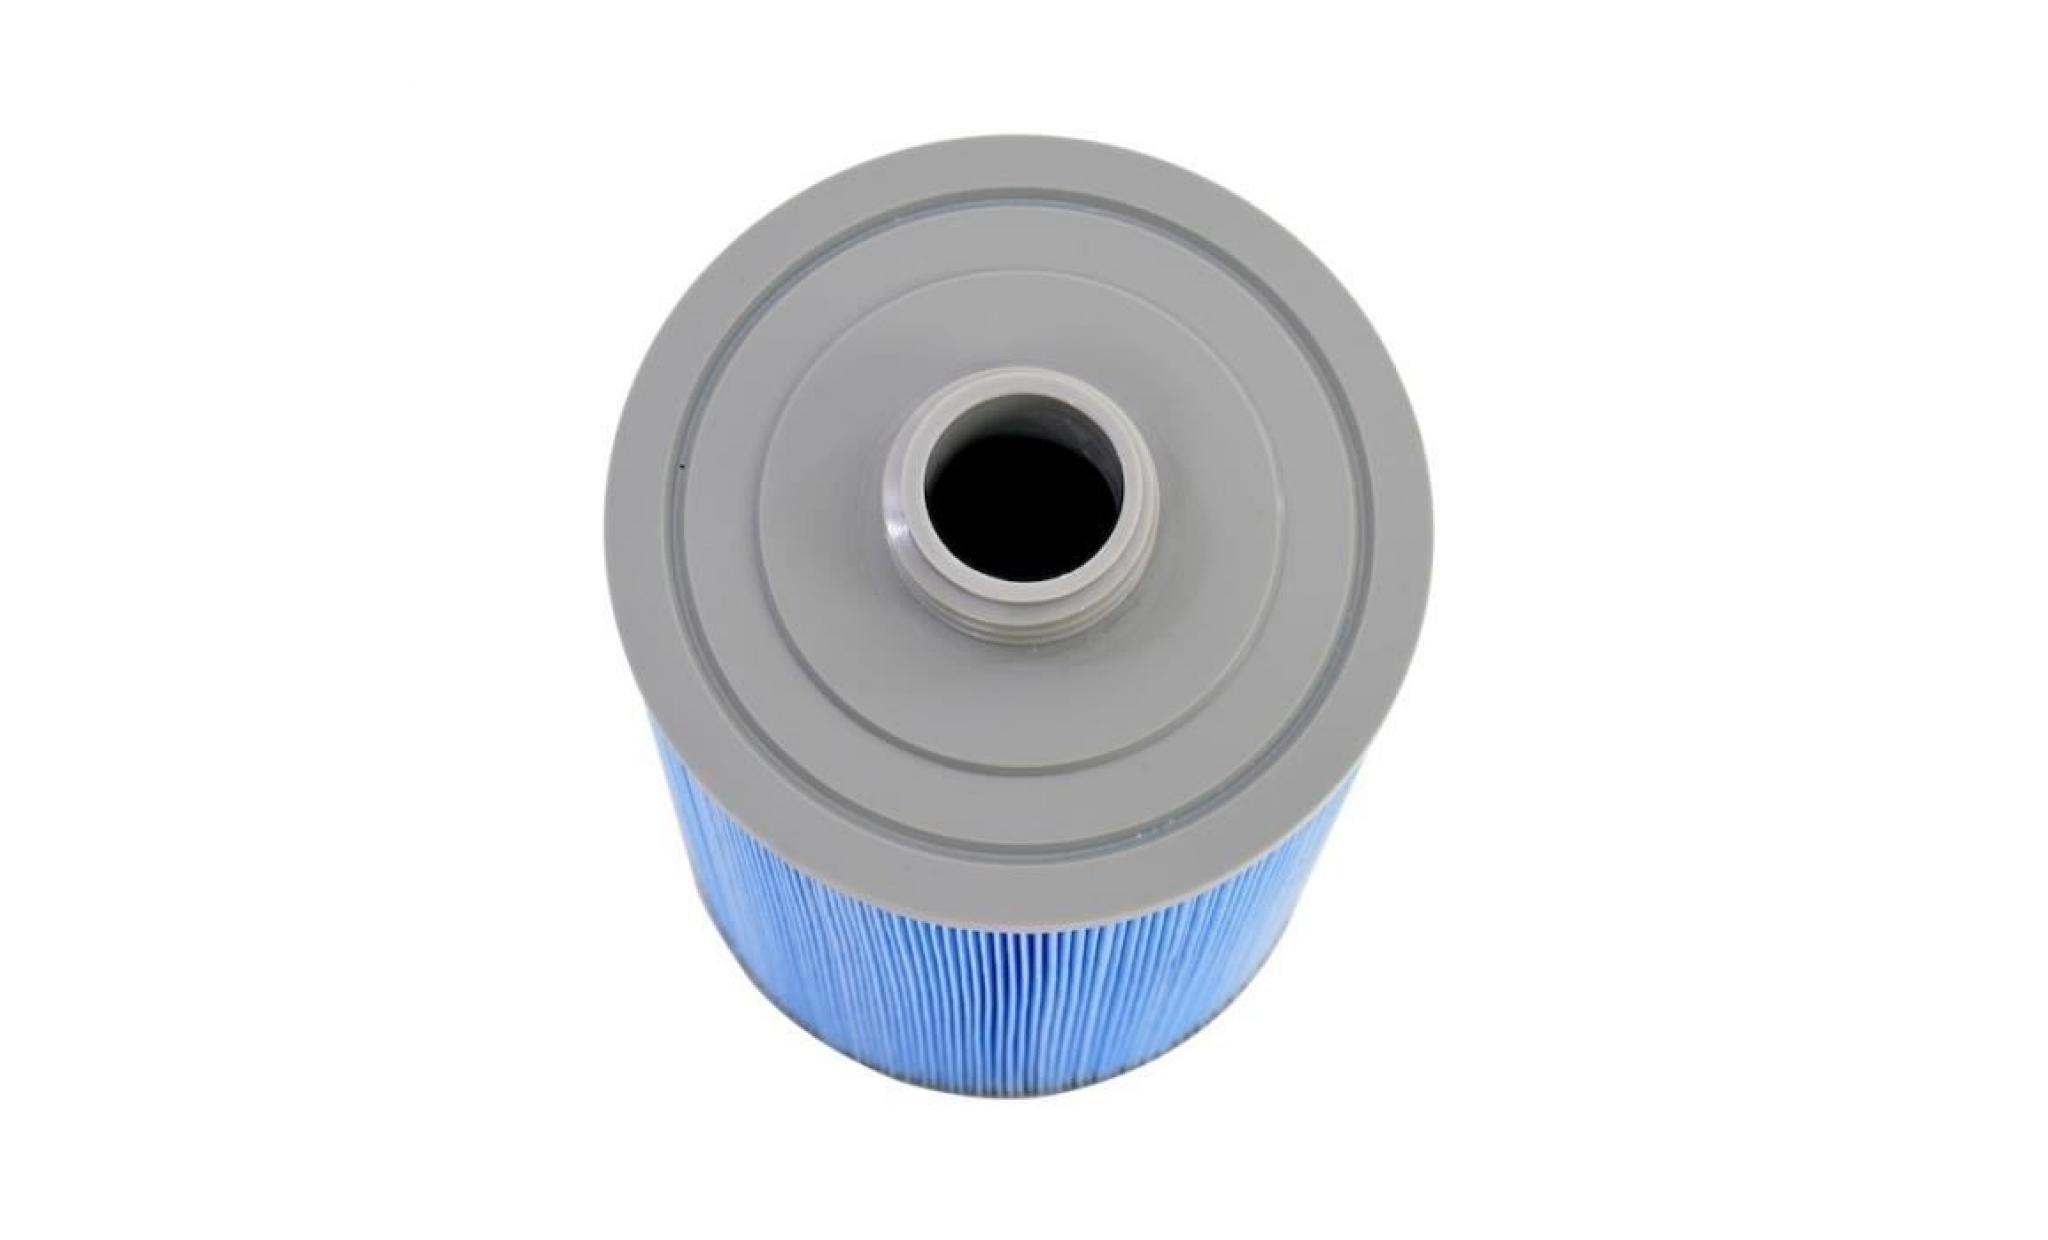 filtre anti bactérien pour spa 60401 / 6ch 940 / pww50 / fc 0359 21 cm pas cher